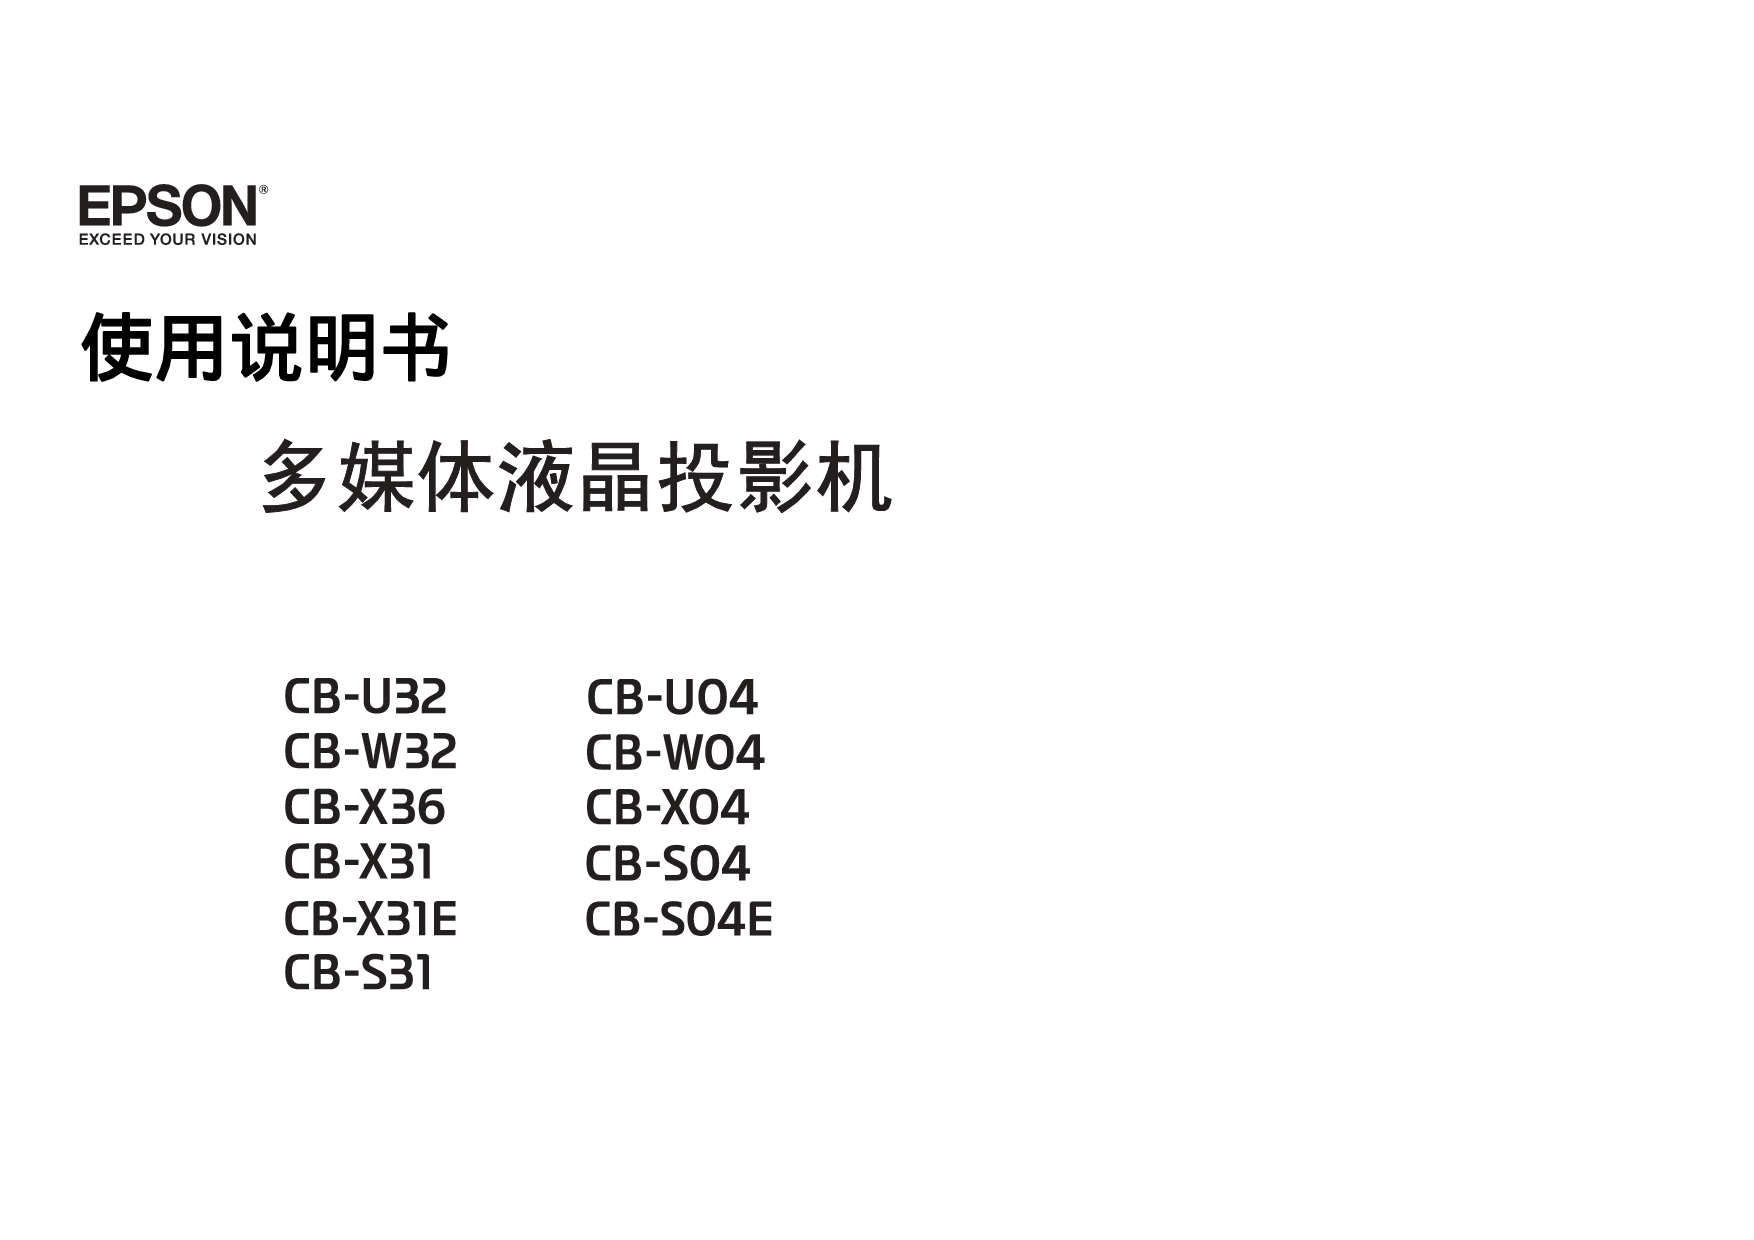 爱普生 Epson CB-S04, CB-U32, CB-X31E 使用说明书 封面